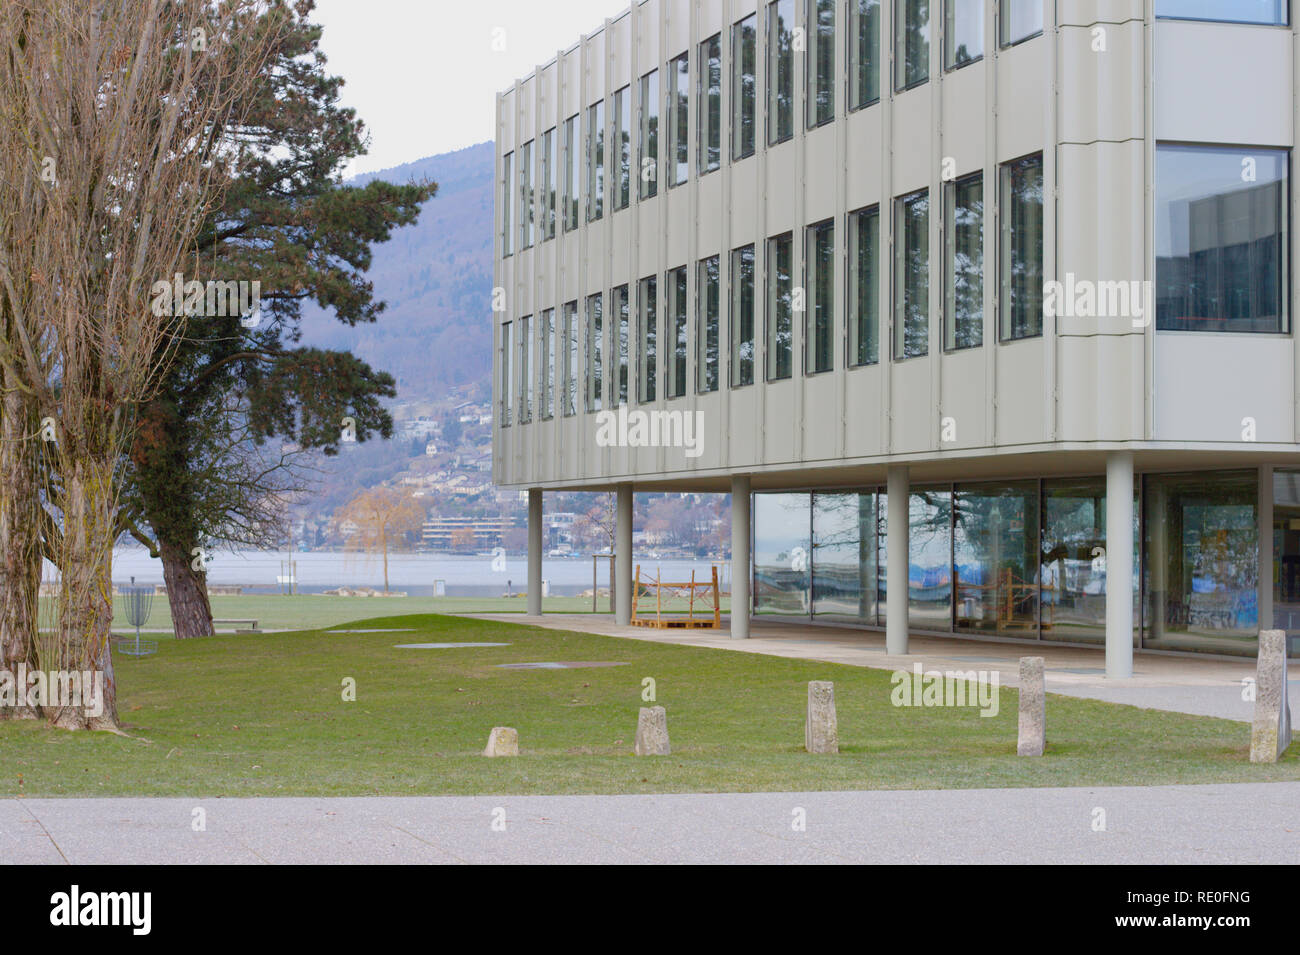 La escuela secundaria de habla francesa en Biel/Bienne (ubicado en la orilla del lago de Biel. Foto de stock